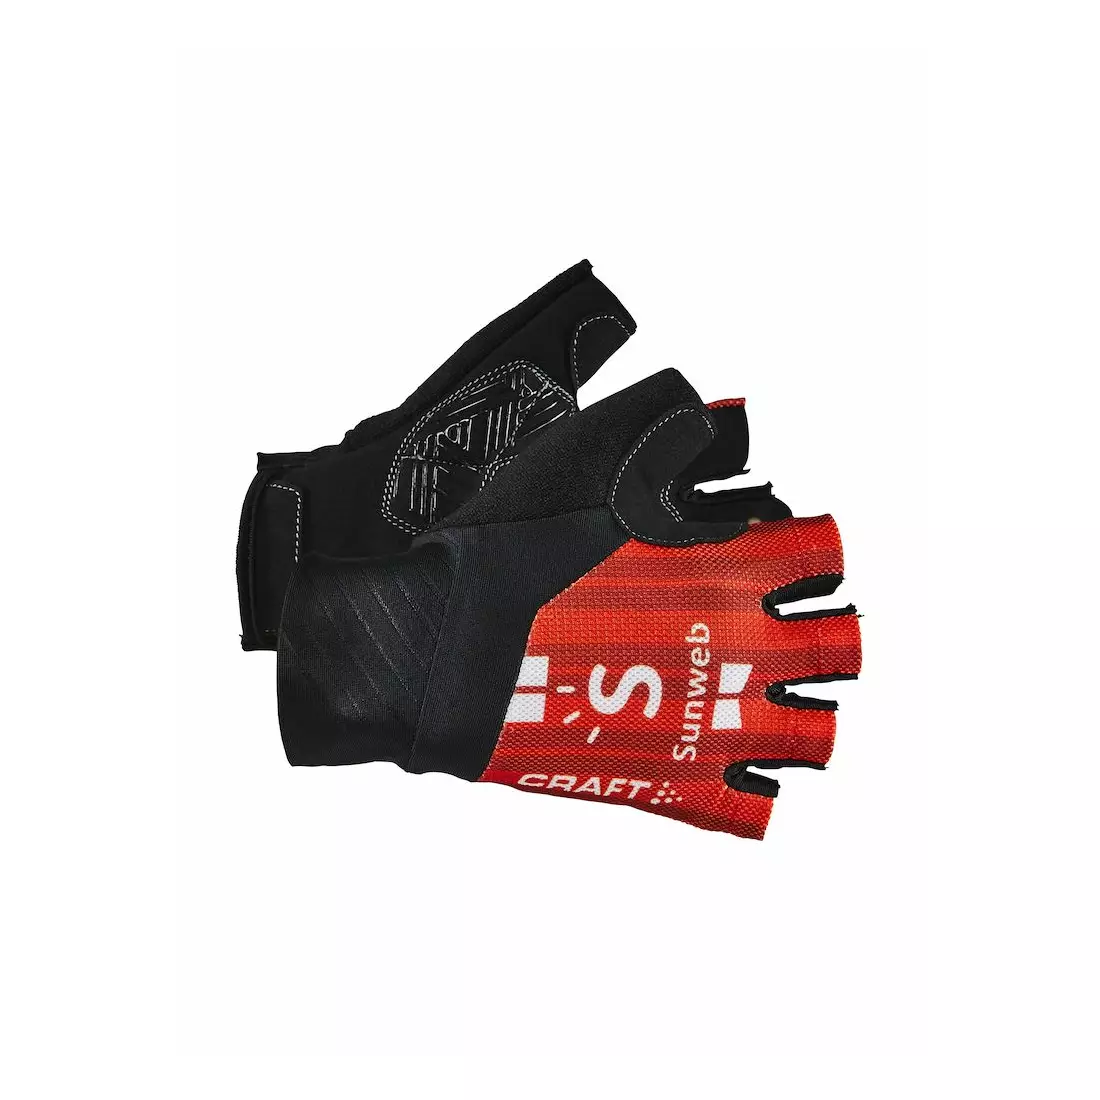 Cyklistické rukavice CRAFT SUNWEB 2019 replika 1908214-426000